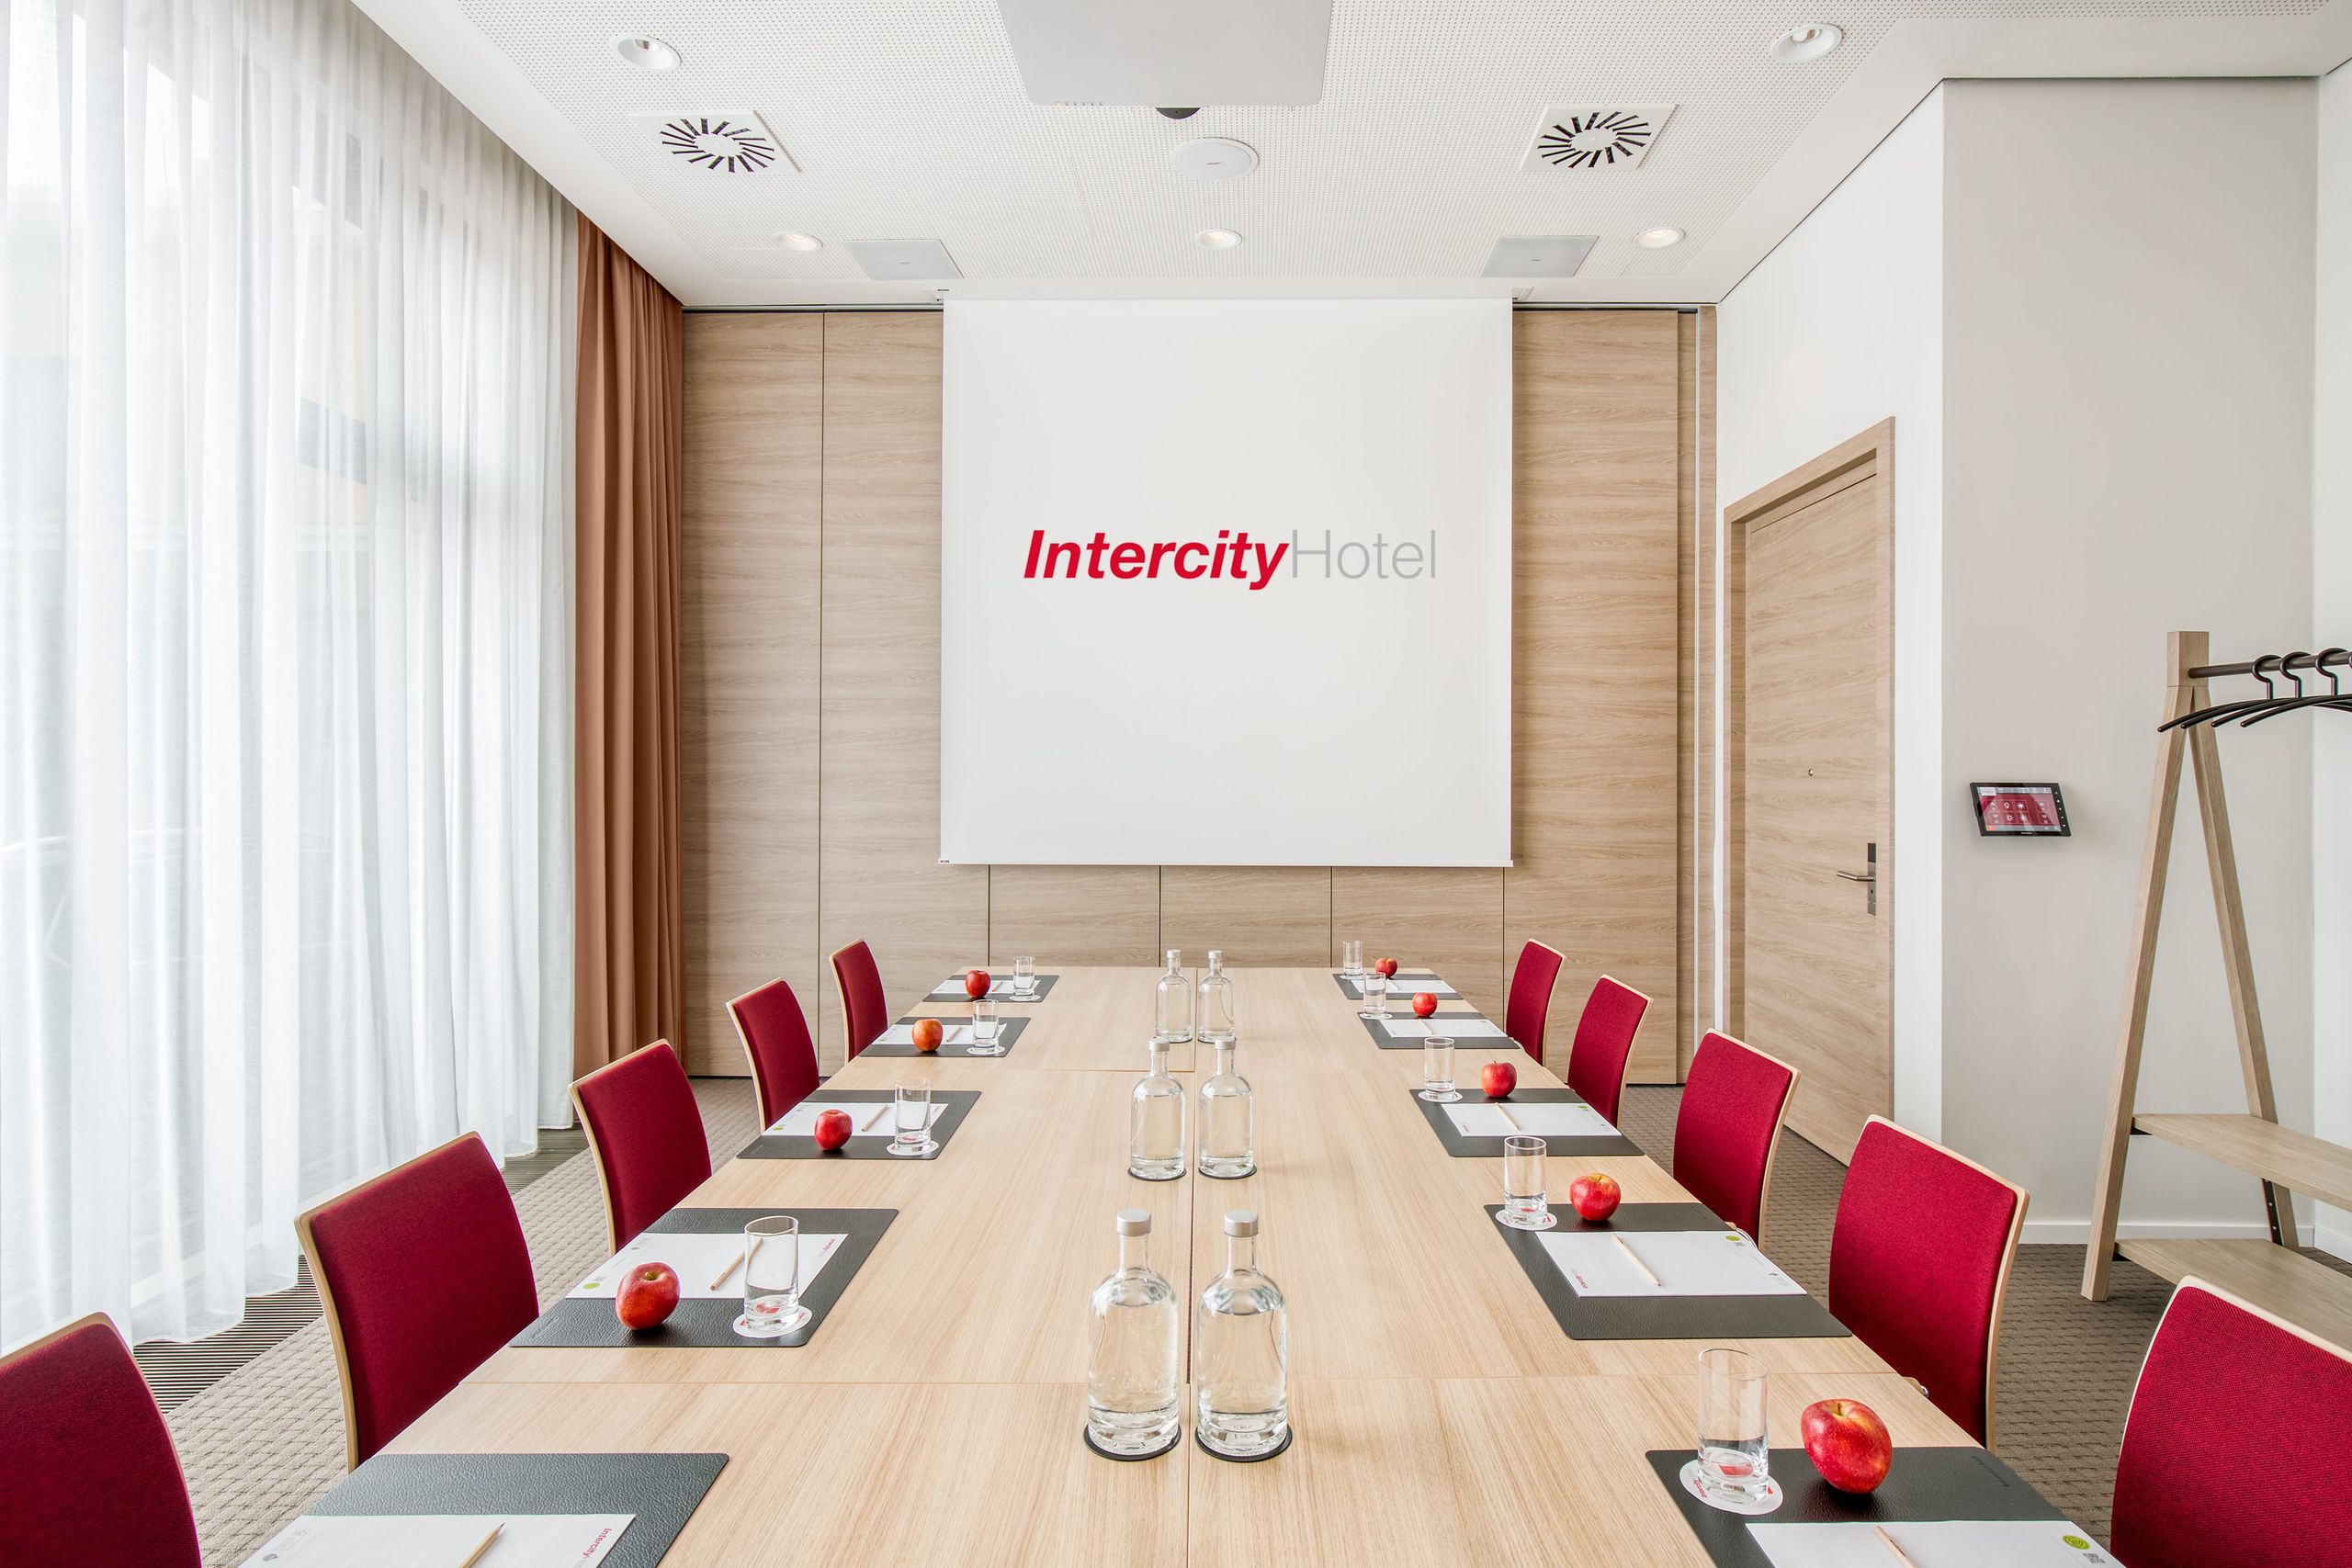 IntercityHotel Hildesheim - Reuniões - Incentivos - Salas de conferência - Eventos